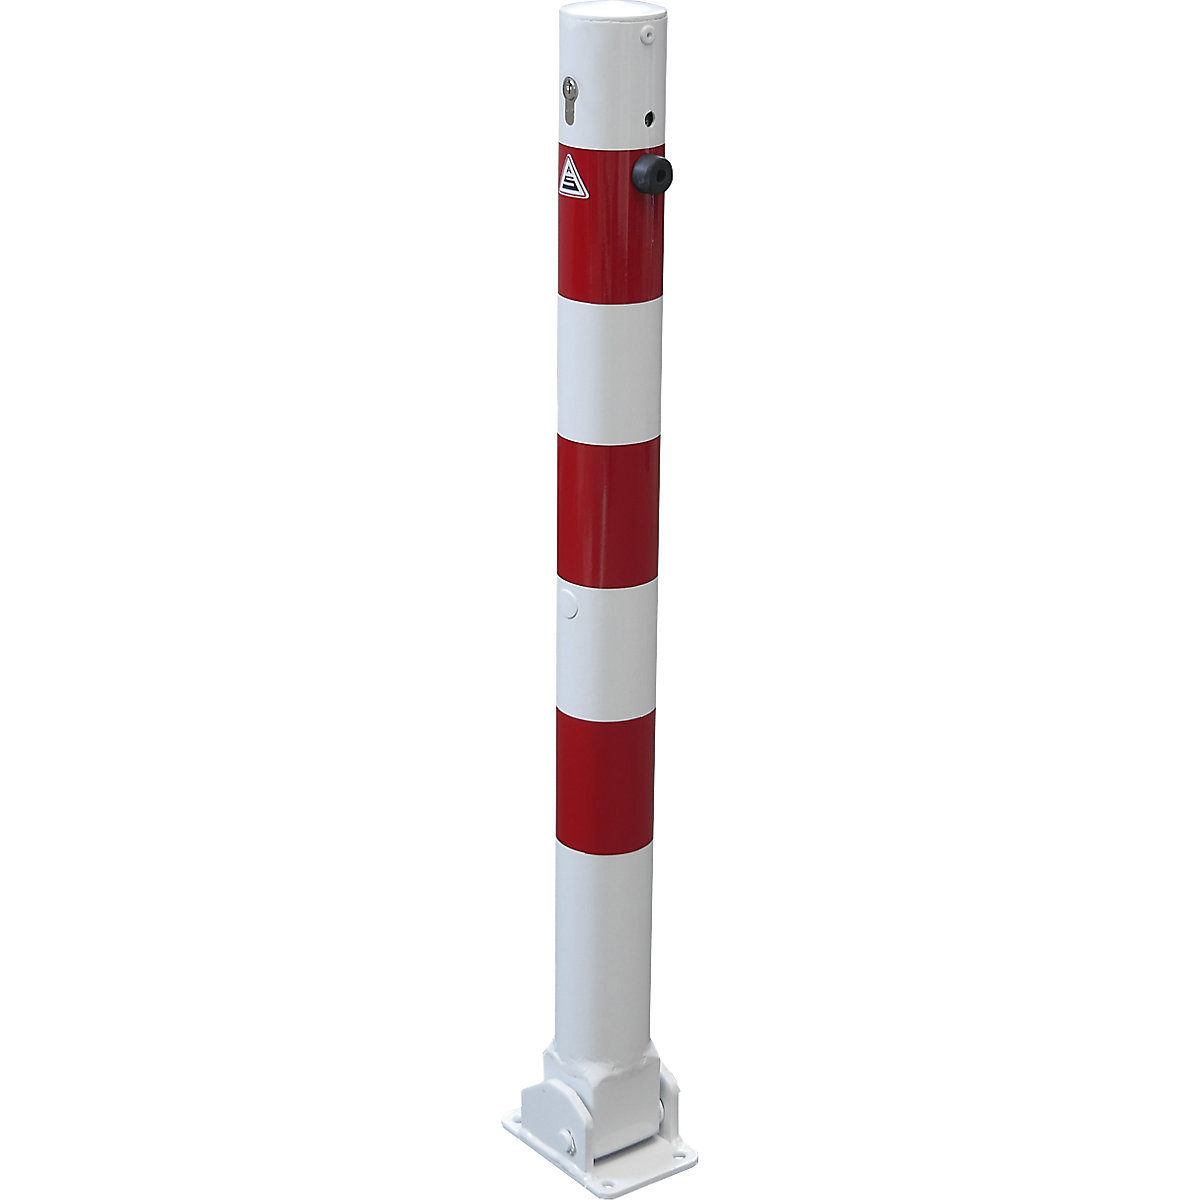 Stupić za ograđivanje, Ø 76 mm, u bijelo / crvenoj boji, s mogućnošću sklapanja i profilnim cilindrom, bez ušice